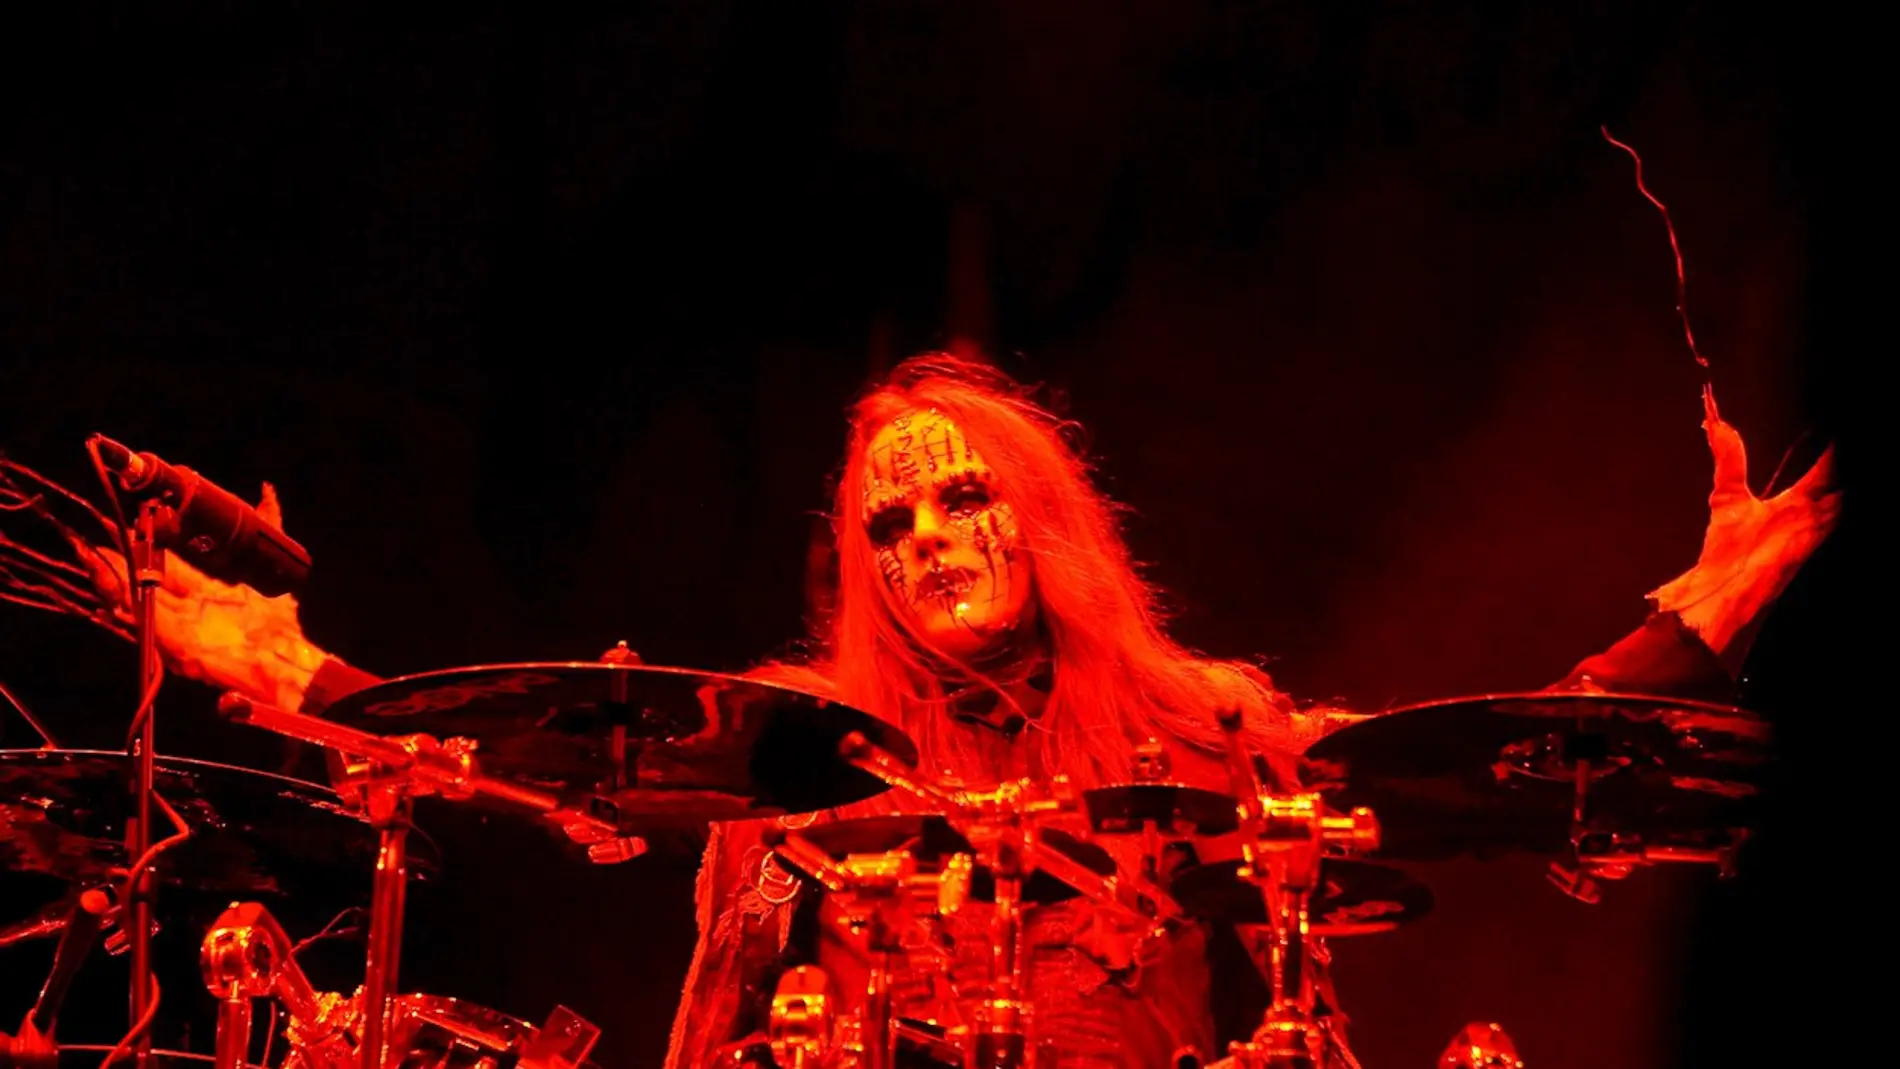 Joey Jordison, exbatería y miembro fundador de Slipknot